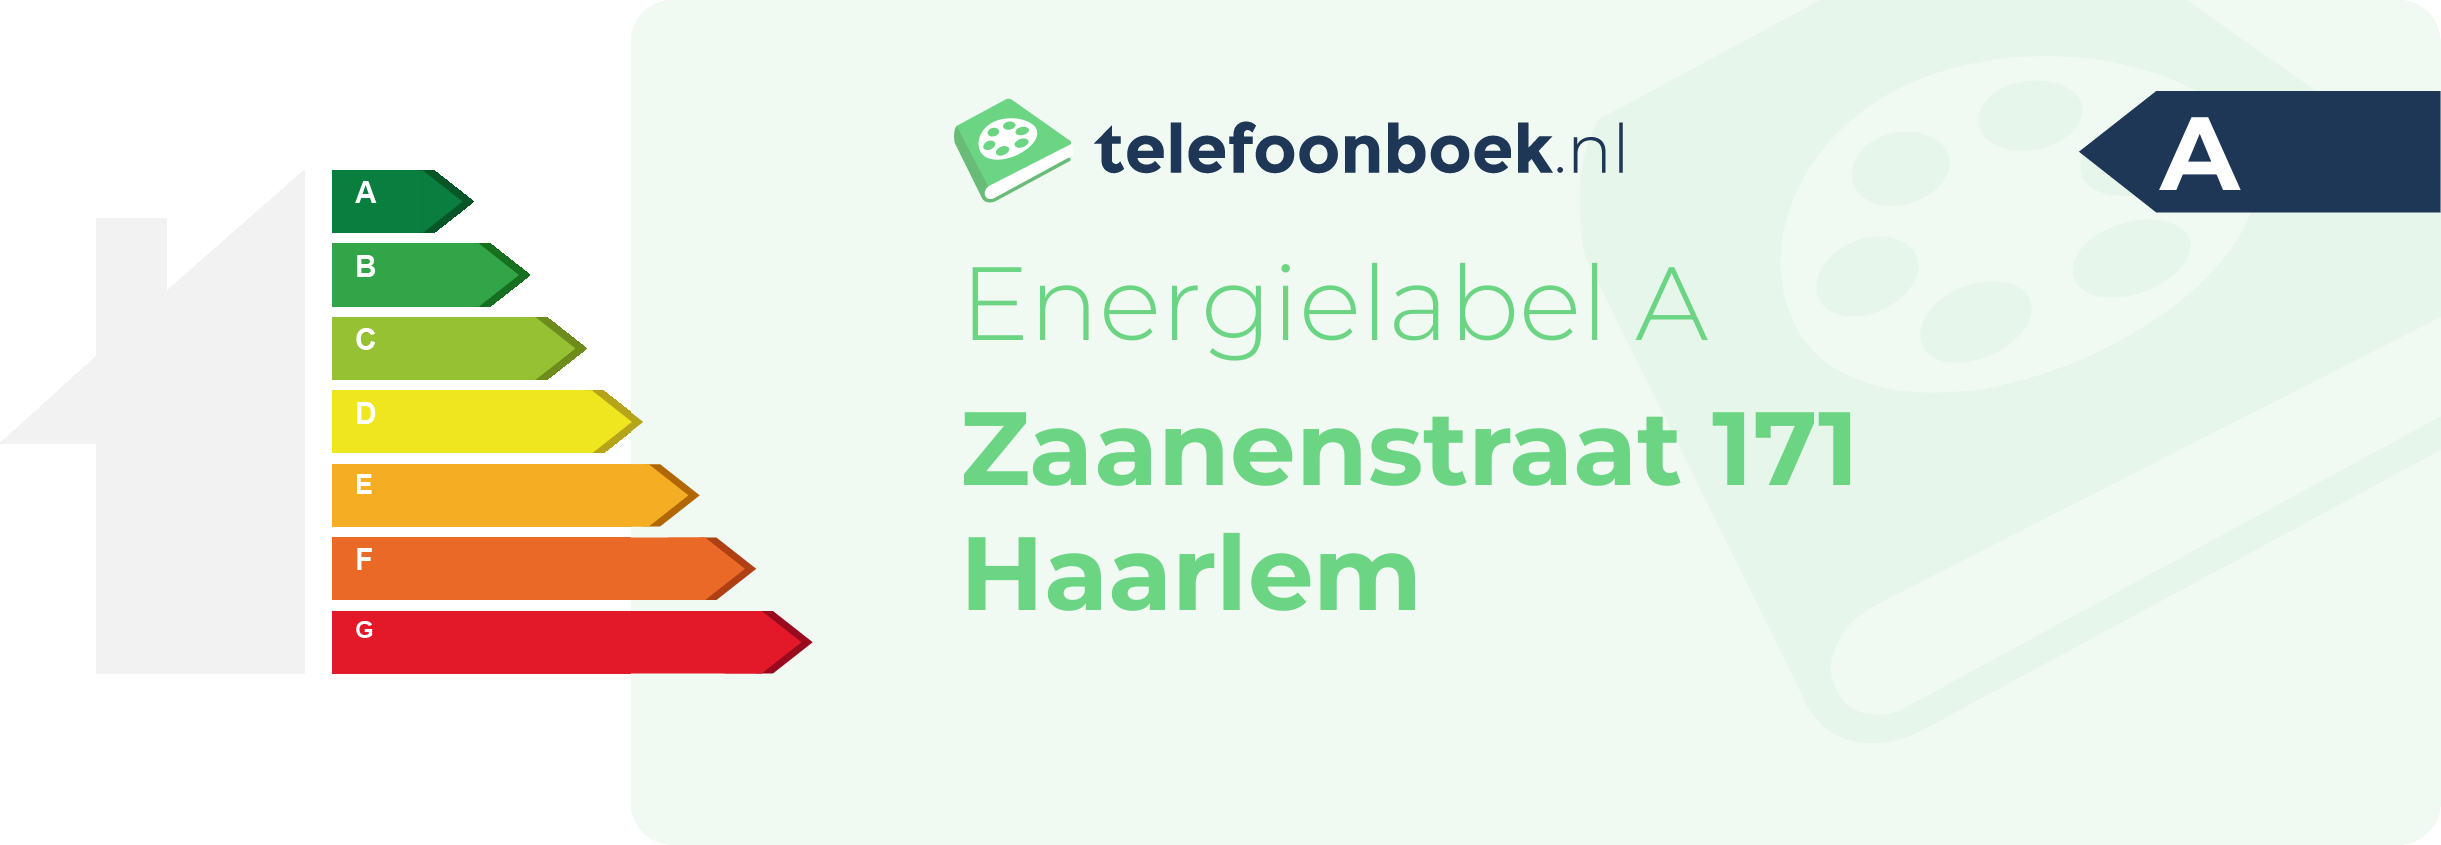 Energielabel Zaanenstraat 171 Haarlem